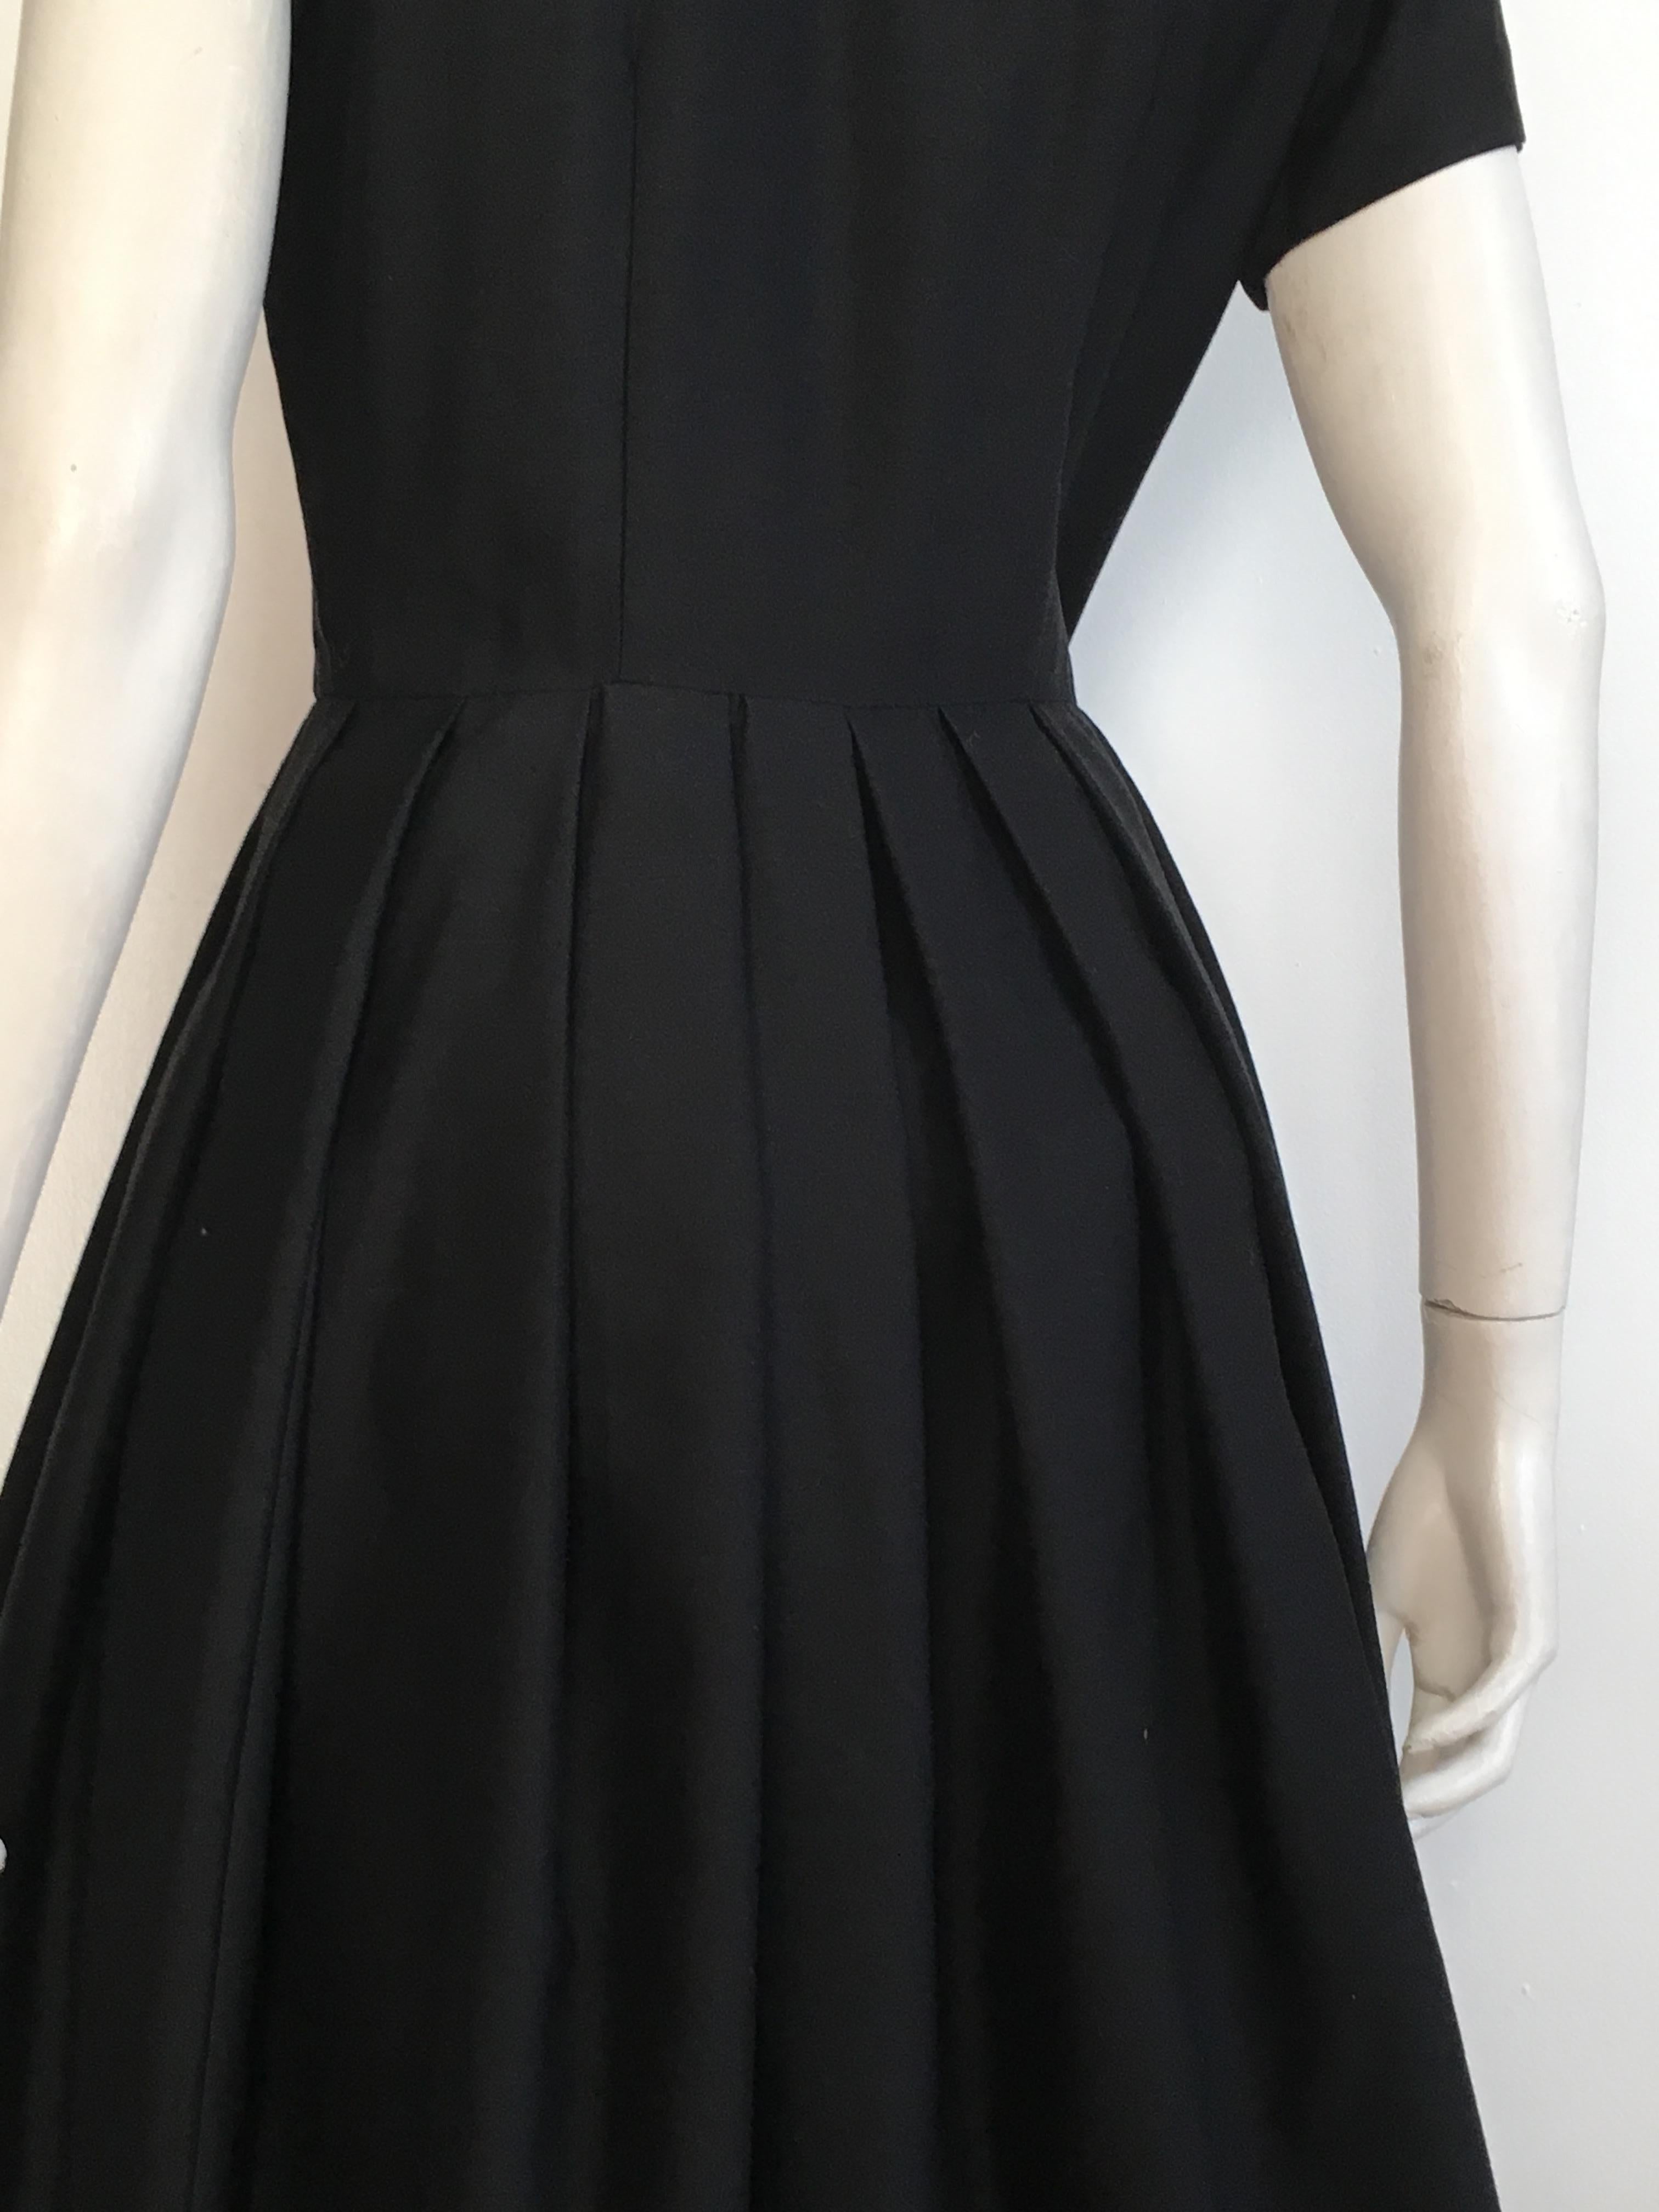 Suzy Perette 1950s Little Black Dress Size 4. For Sale 7